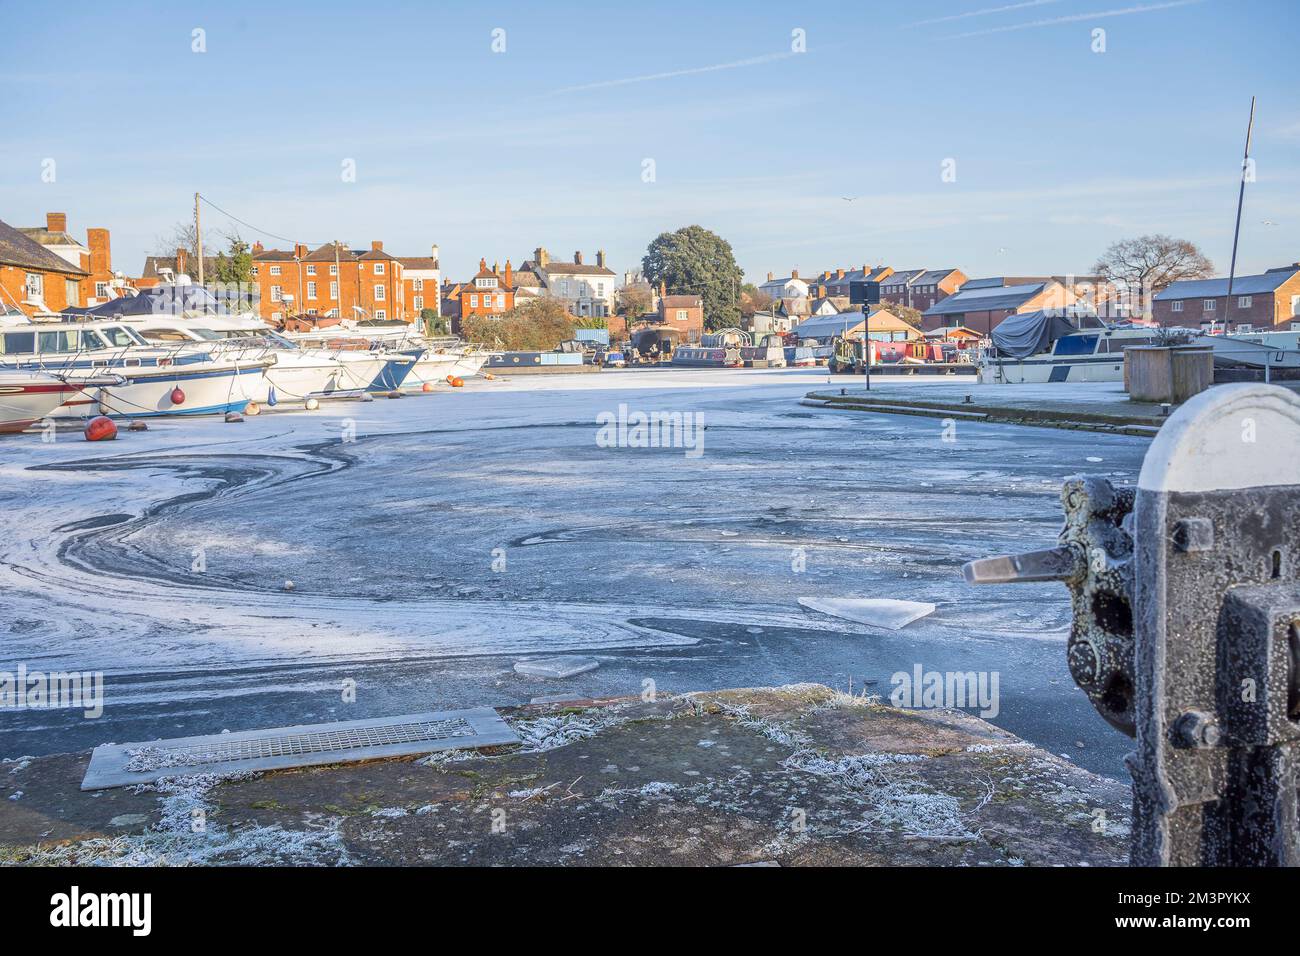 Stourport-on-Severn, Großbritannien. Dezember 2022. Wetter in Großbritannien: Eis überall, da es in den Midlands immer noch frostige Bedingungen gibt. Das Wasser im Yachthafen ist fest gefroren in Stourport-on-Severn und Boote fahren heute nirgendwo hin. Quelle: Lee Hudson/Alamy Live News Stockfoto